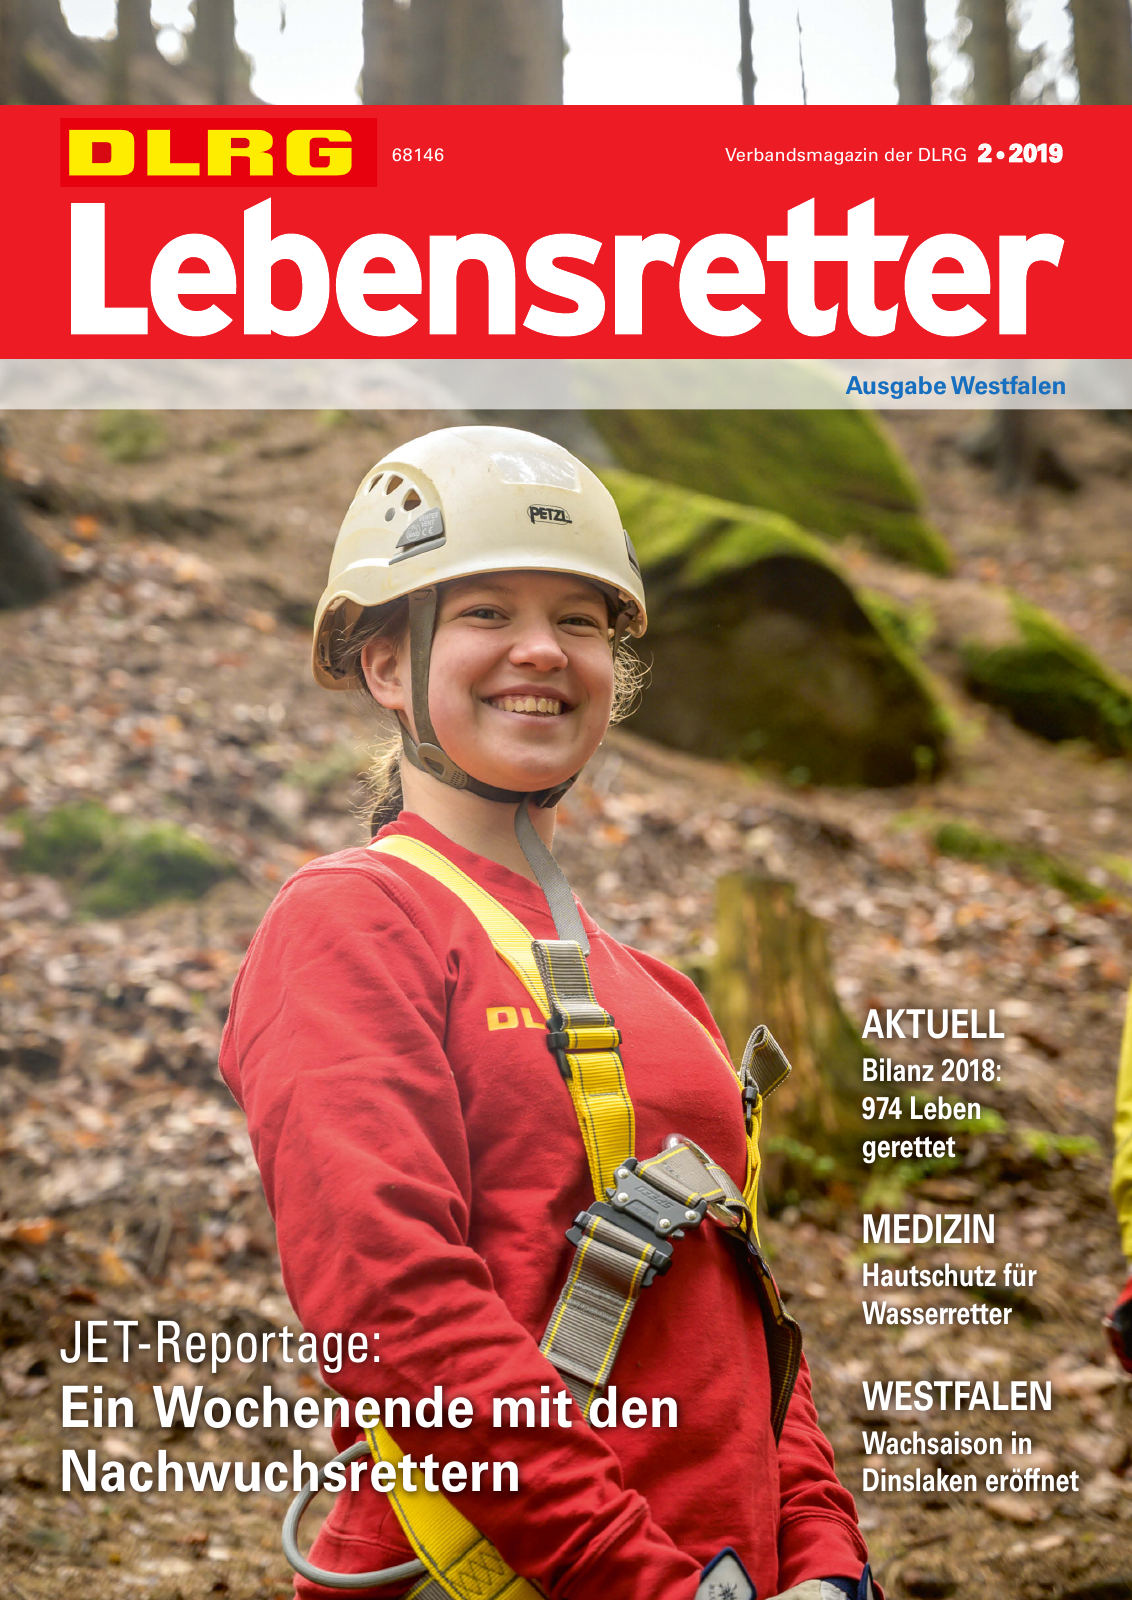 Vorschau Lebensretter 2/2019 - Westfalen Regionalausgabe Seite 1